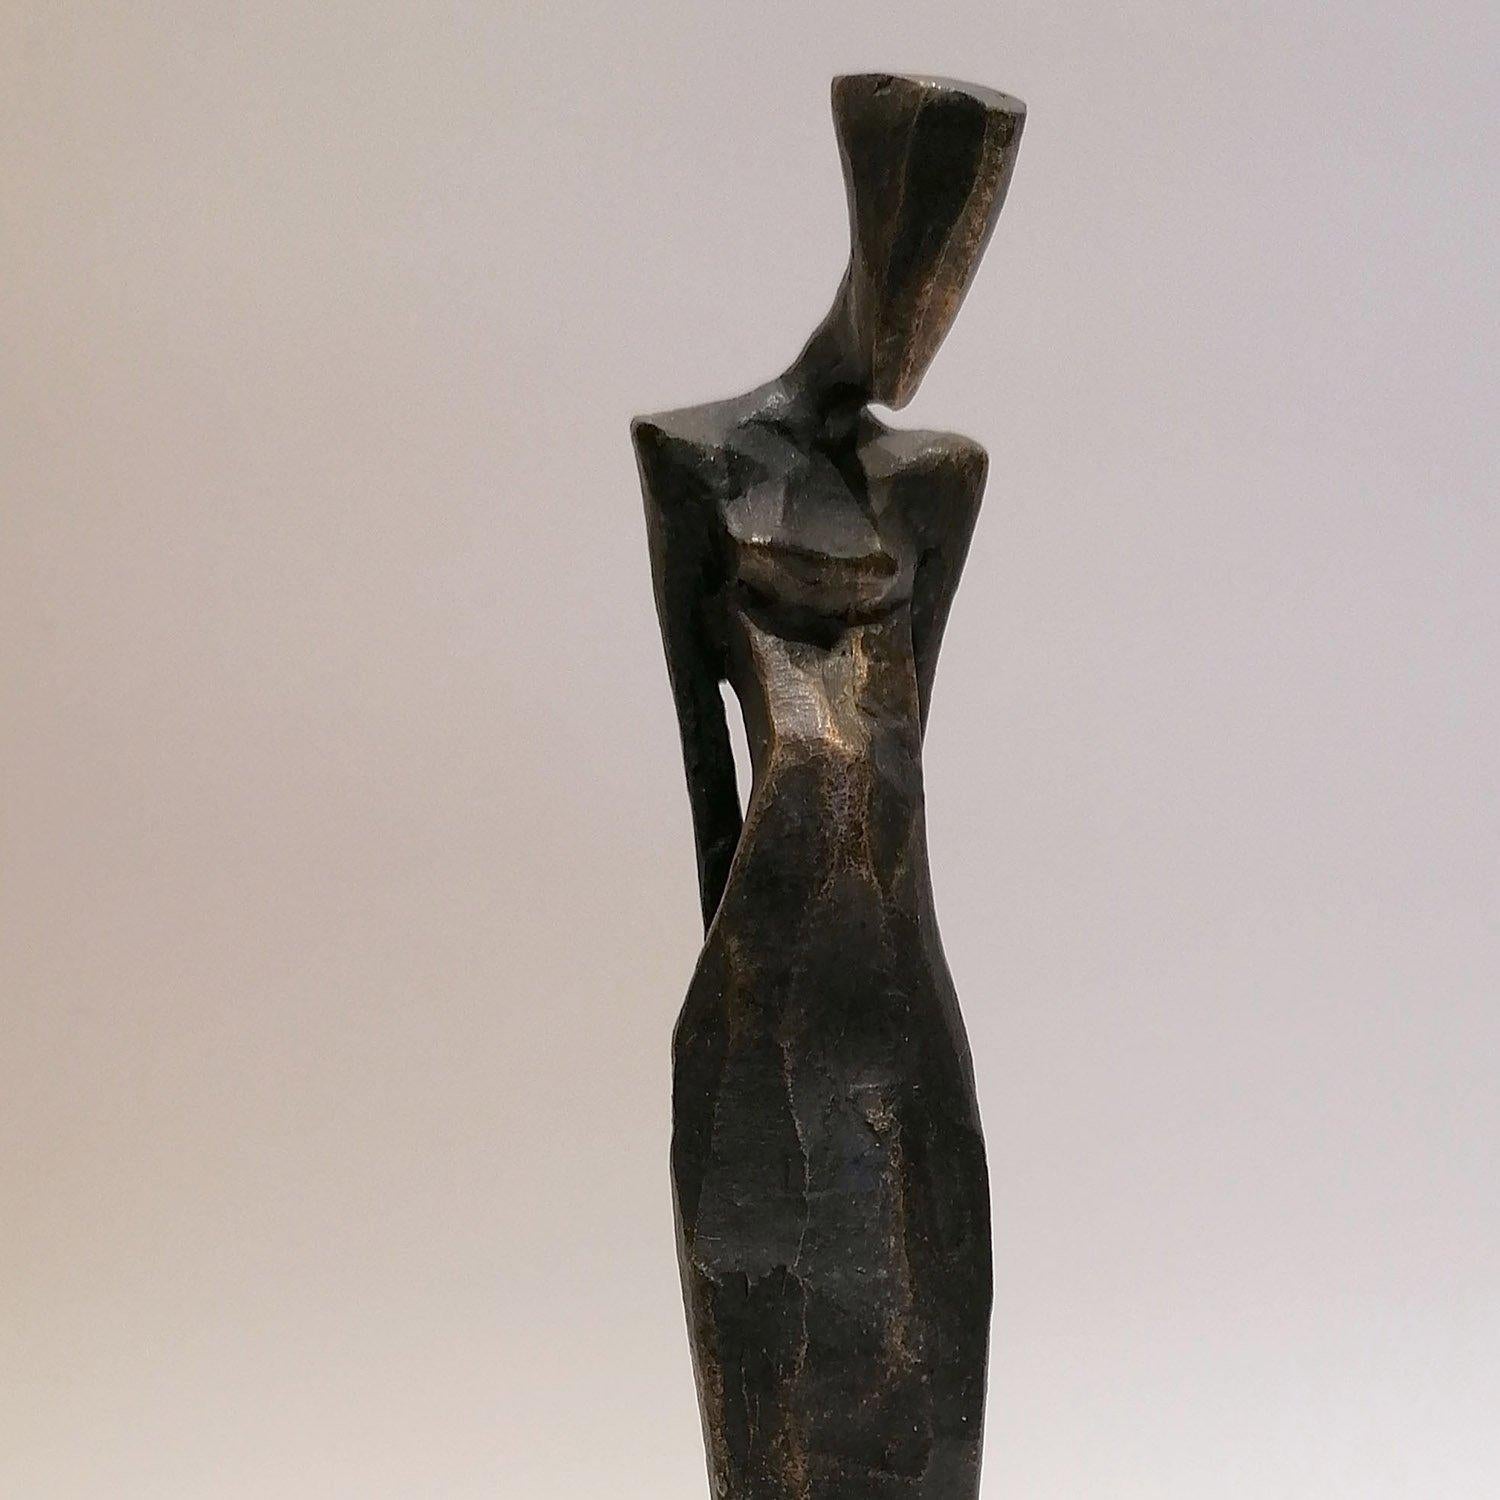 Nando Kallweit Annalies Bronzeskulptur, Auflage: 25

Abmessungen: 21cm hoch
